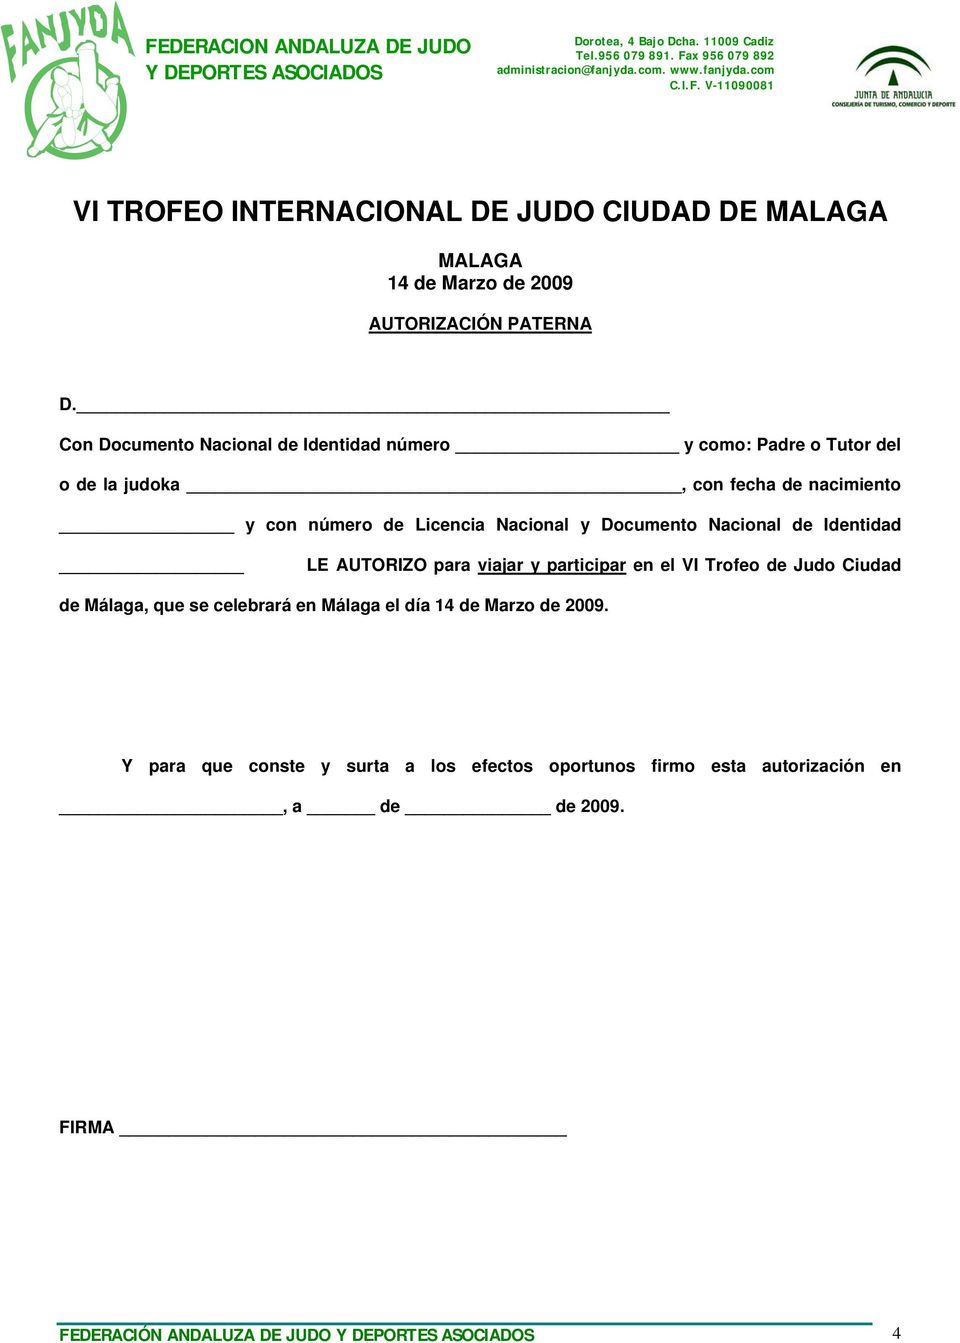 AUTORIZO para viajar y participar en el VI Trofeo de Judo Ciudad de Málaga, que se celebrará en Málaga el día 14 de Marzo de 2009.